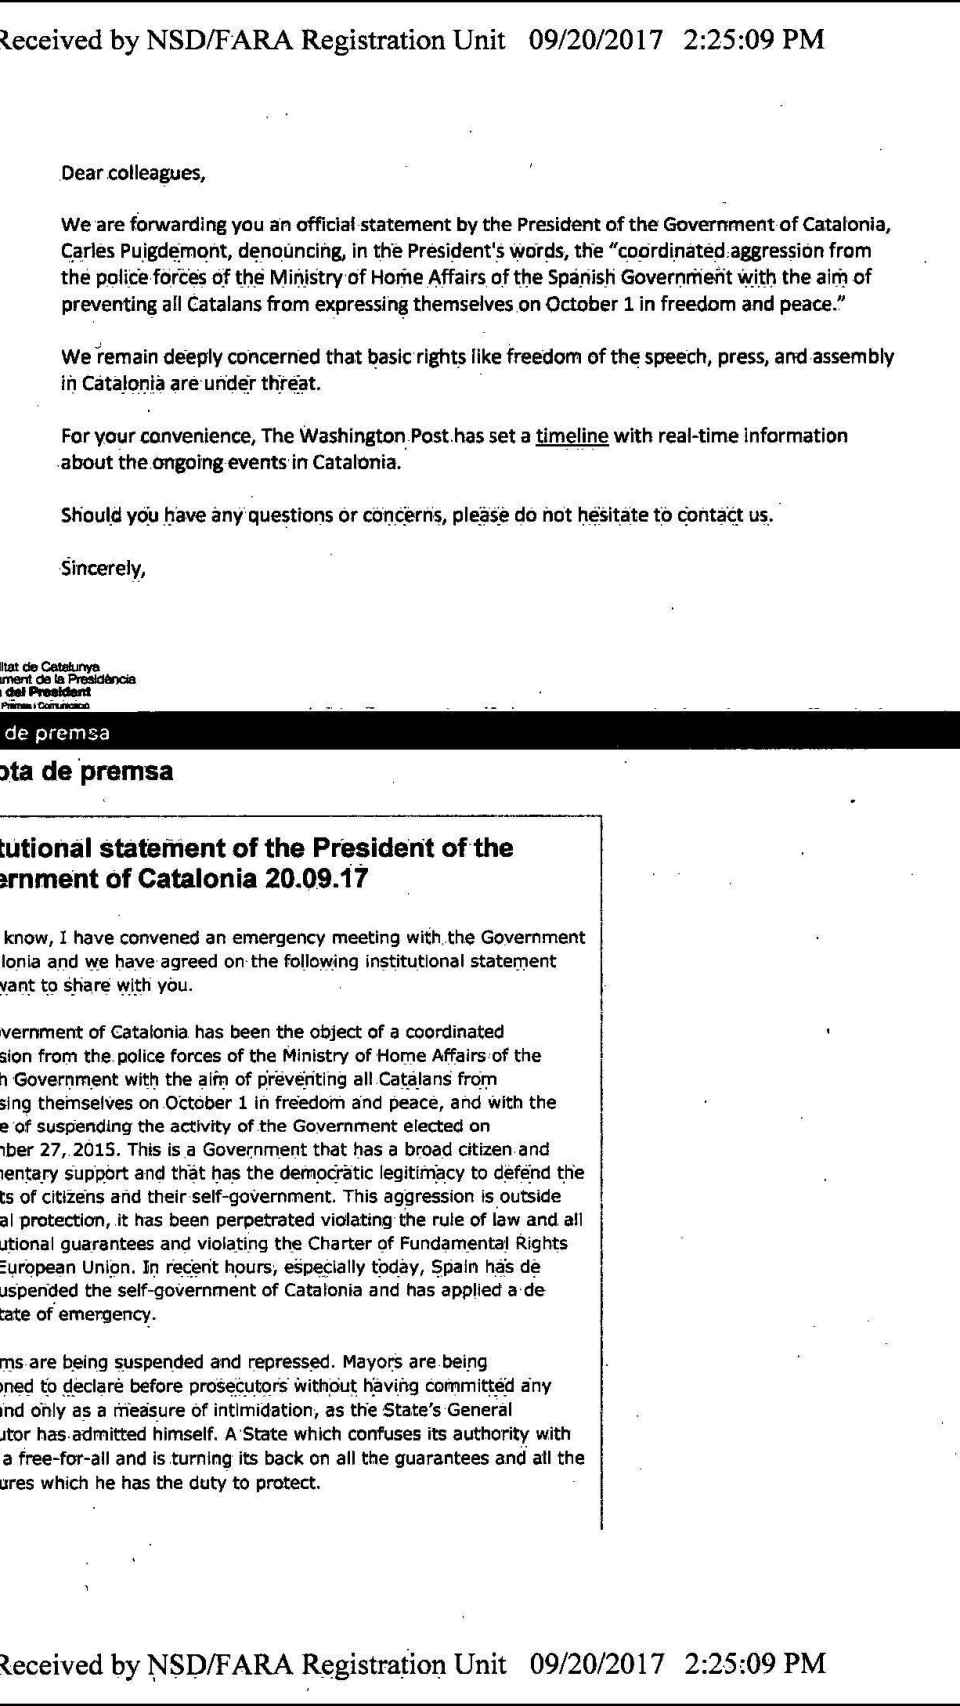 Primera página del documento que reproduce el discurso de Puigdemont del 20 de septiembre de 2017.